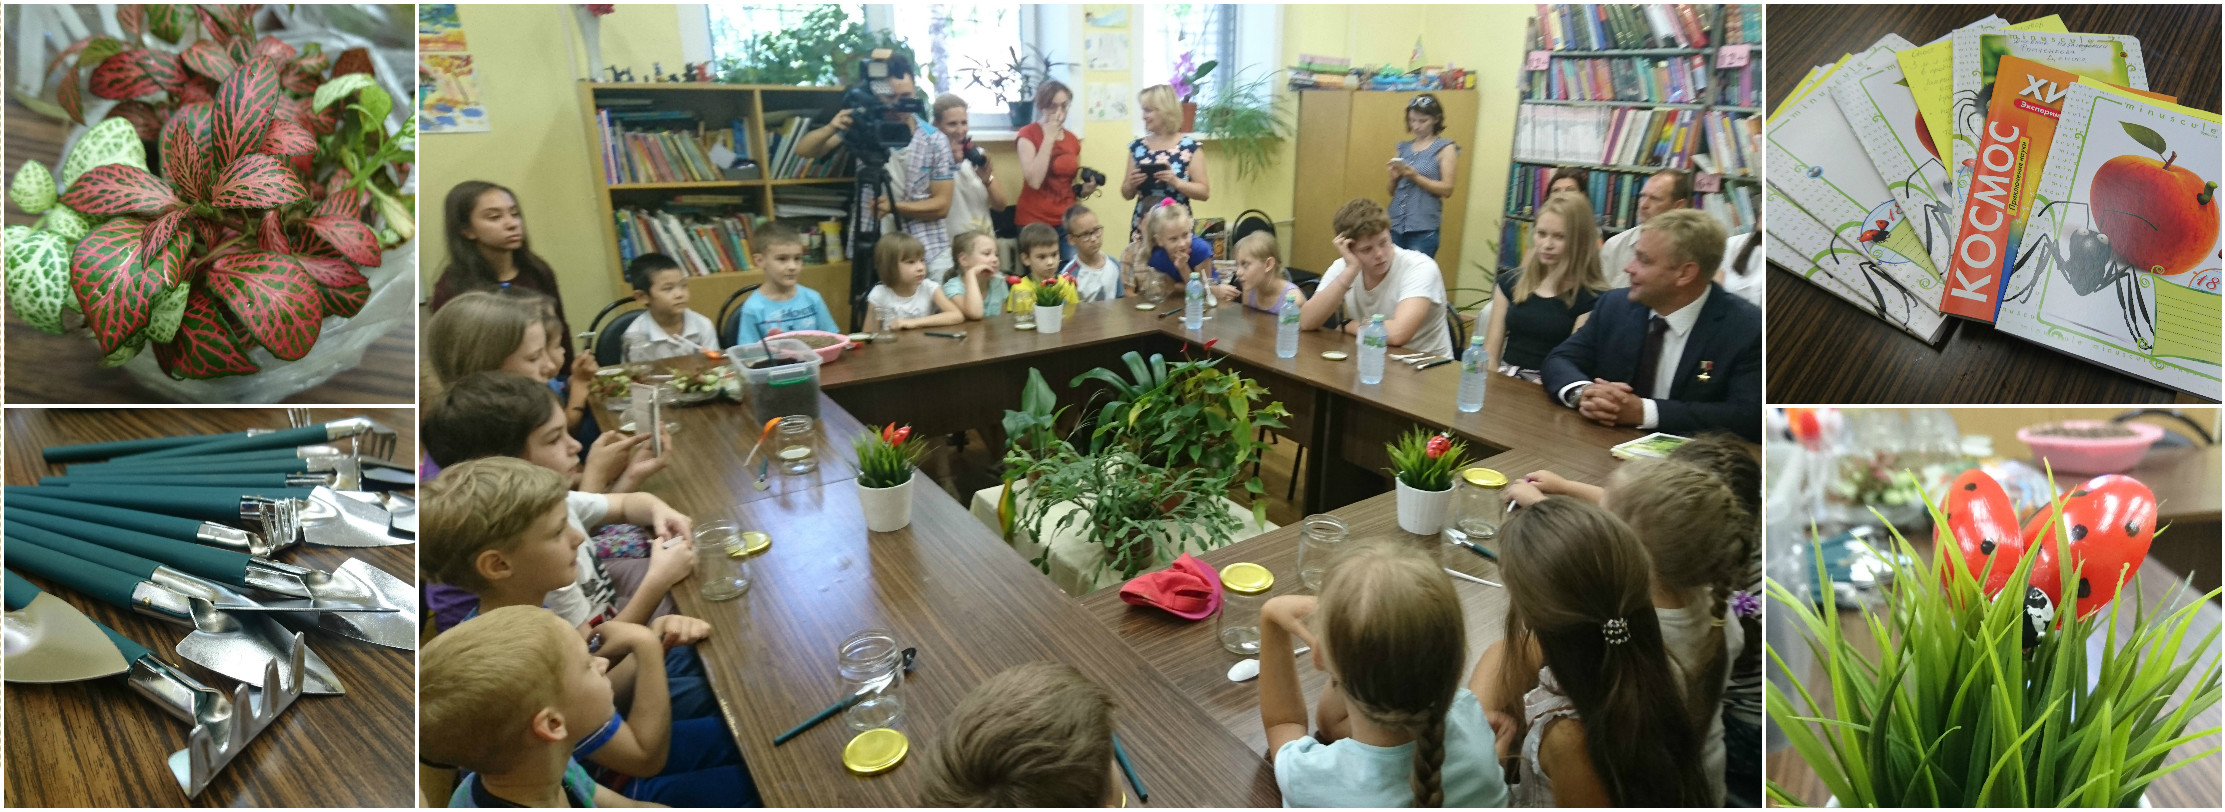 28 июля 2016 - занятие детского экспериментального клуба «ЭКО-кидс»